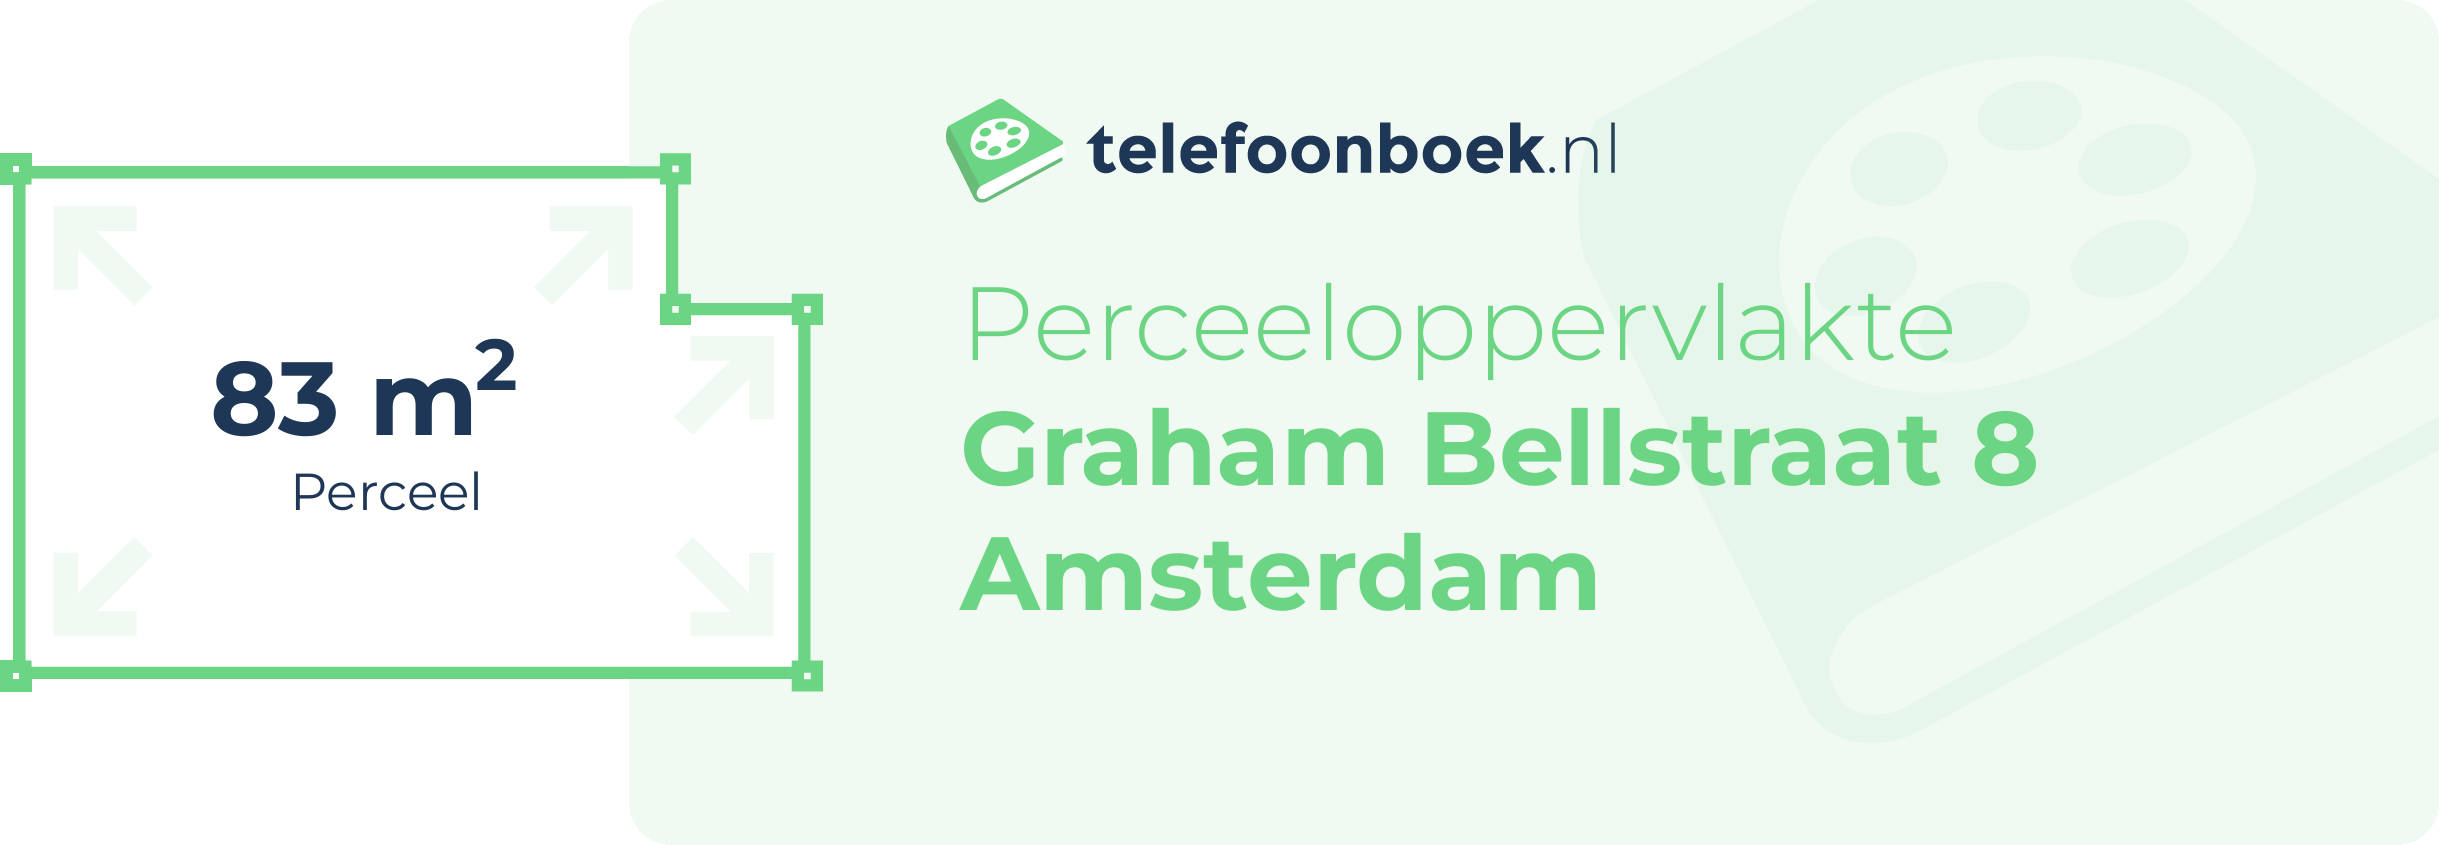 Perceeloppervlakte Graham Bellstraat 8 Amsterdam